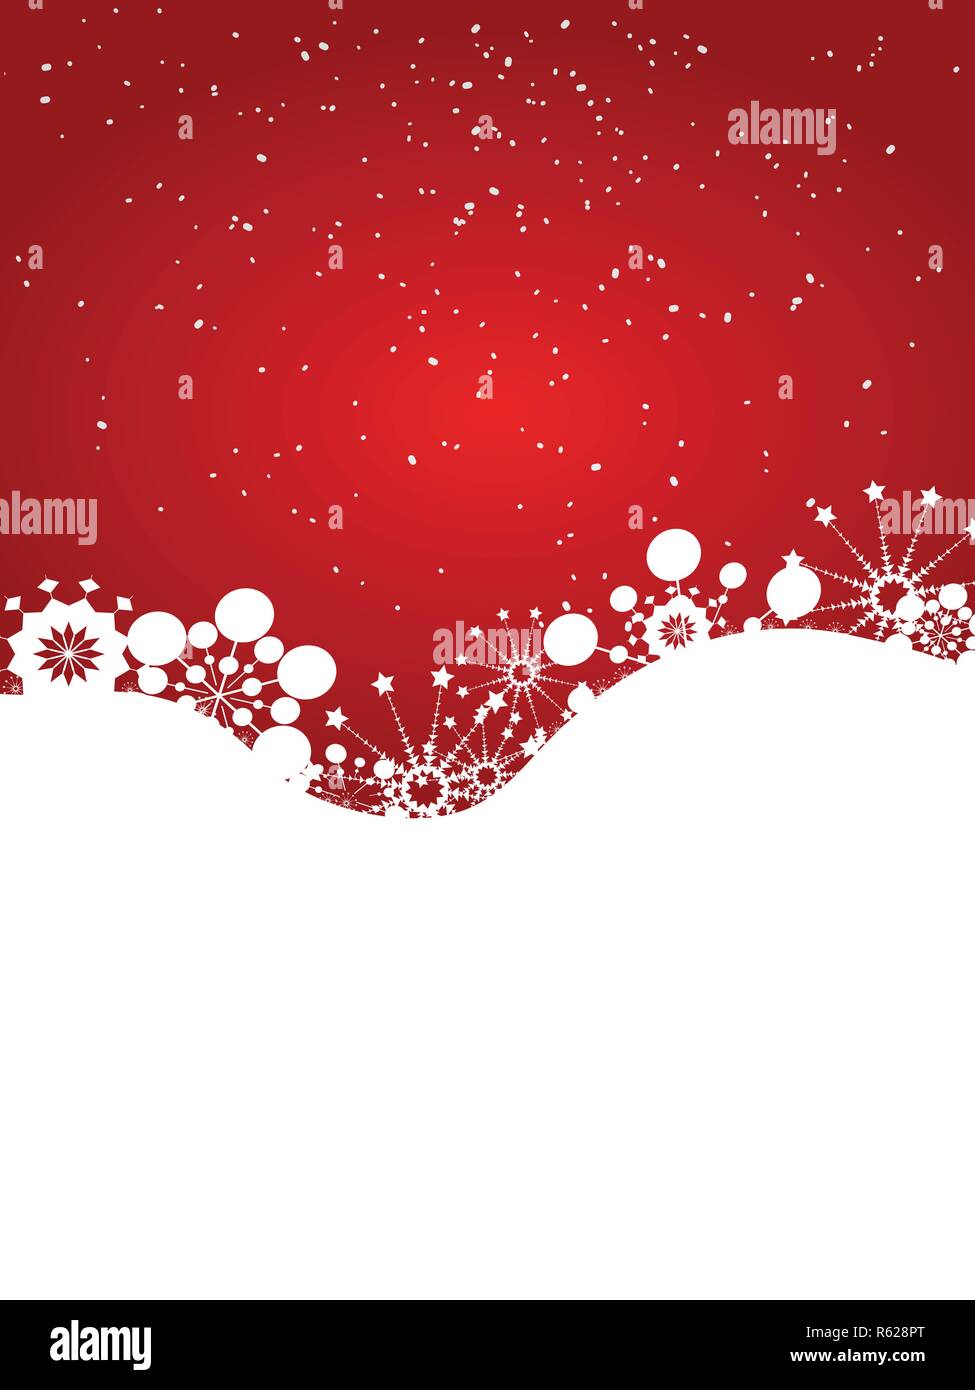 Chào mừng đến với không khí Giáng sinh ấm áp với hình nền Noel đỏ trắng tuyệt đẹp! Tạo một không gian lãng mạn và đầy phấn khích cho chân dung của bạn với phông nền này. Đón chờ những khoảnh khắc đáng nhớ và tạo ra những bức ảnh đẹp nhất của bạn với hình nền Noel này.